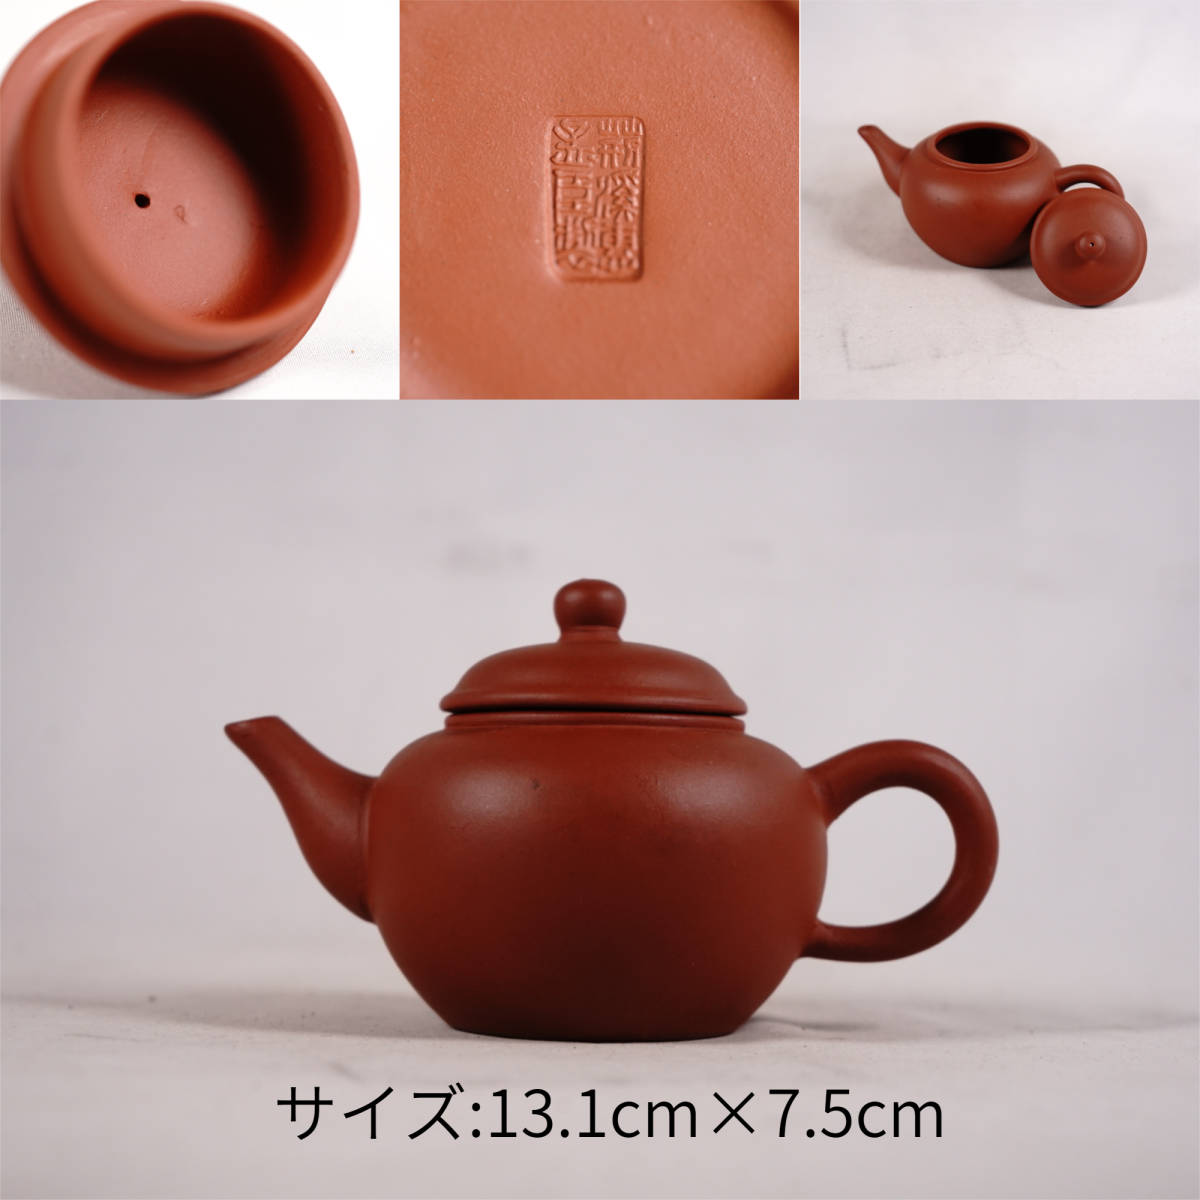 0719-7 唐物朱泥急須刻あり荊溪惠孟臣製在銘茶道具煎茶道具中国古美術